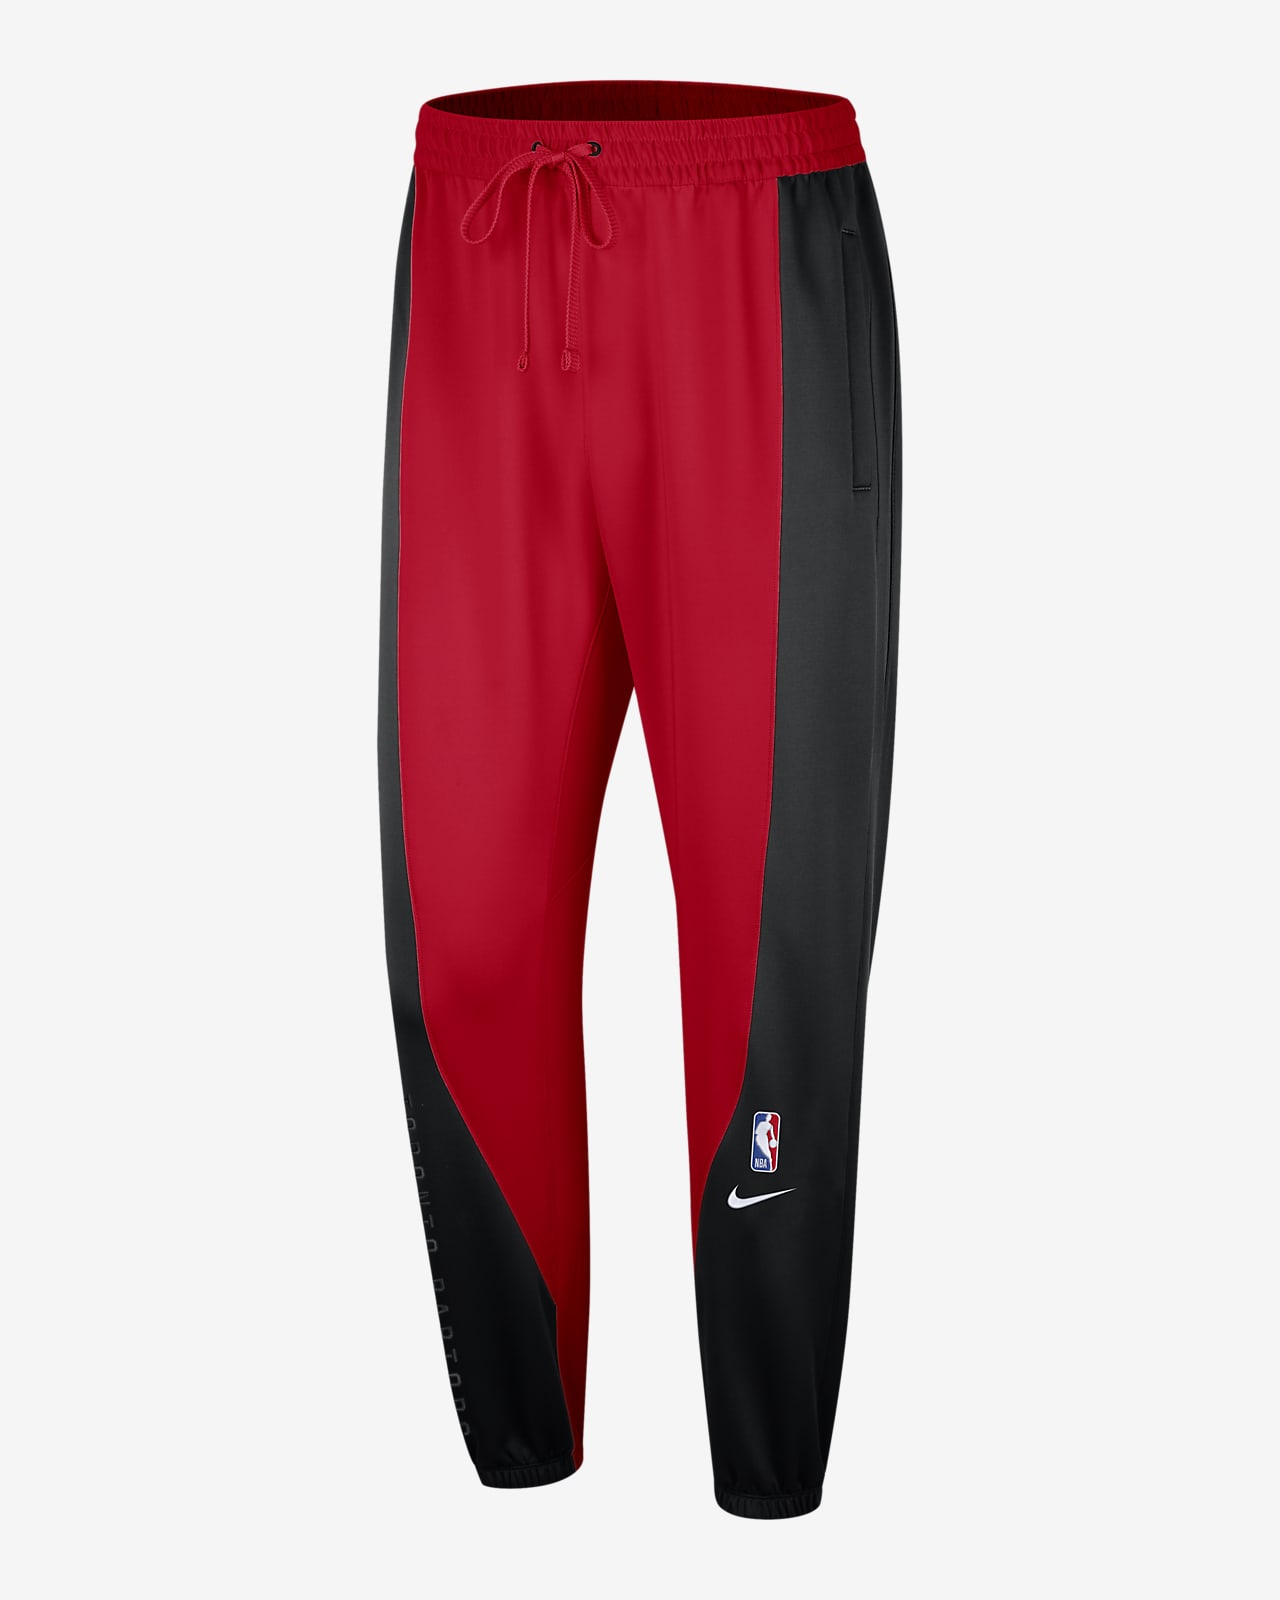 Official NBA Nike Pants, NBA Leggings, Pajama Pants, Joggers